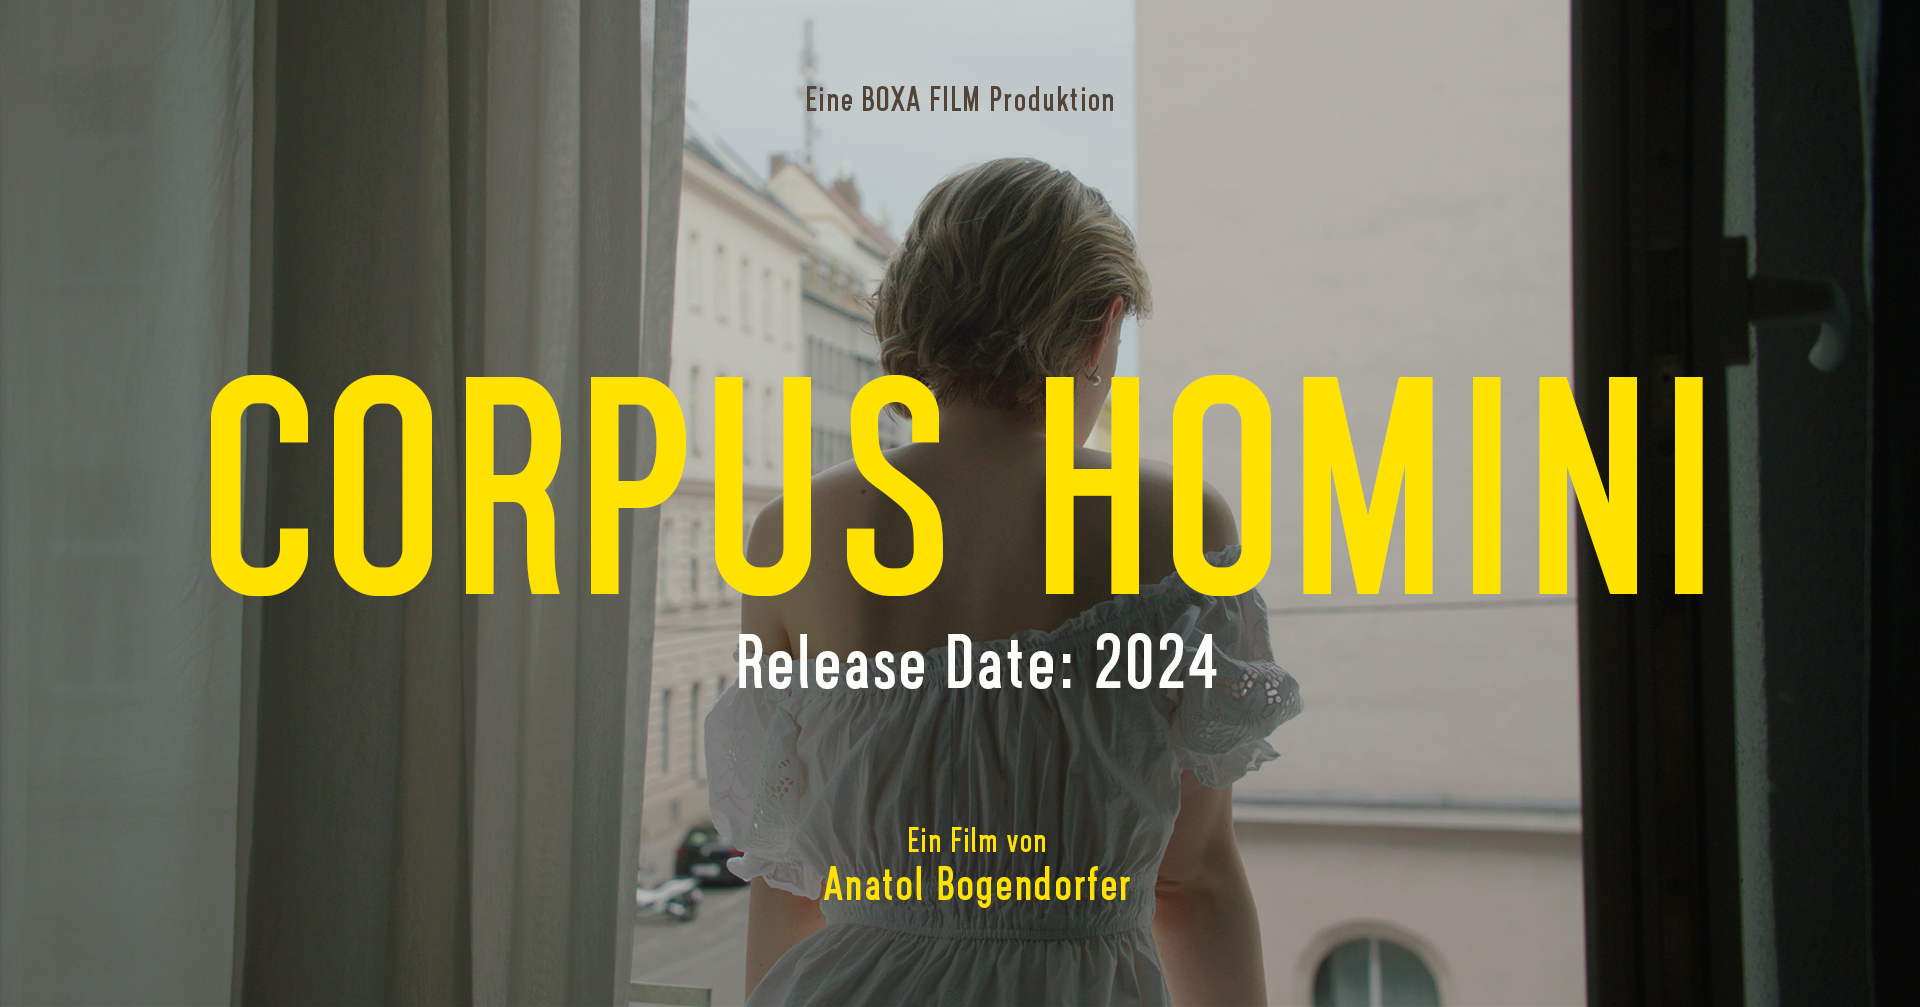 CORPUS HOMINI: Release Date 2024